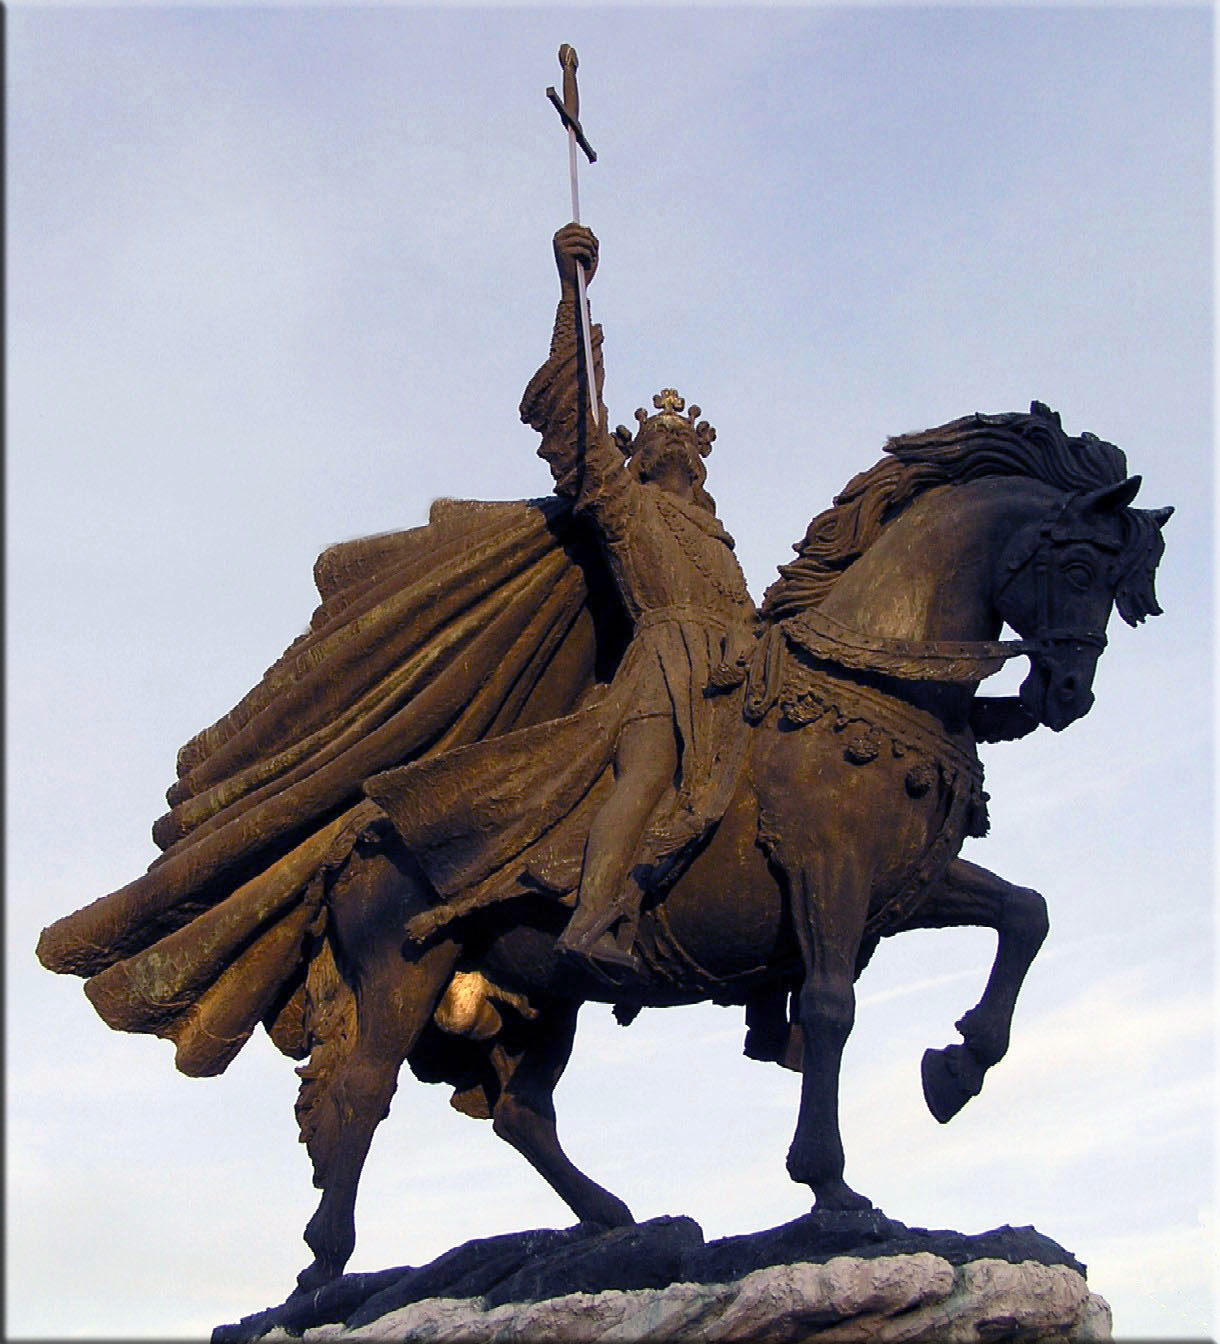 Statue of Alfonso VI of Castile in Toledo, Castile-La Mancha, Spain